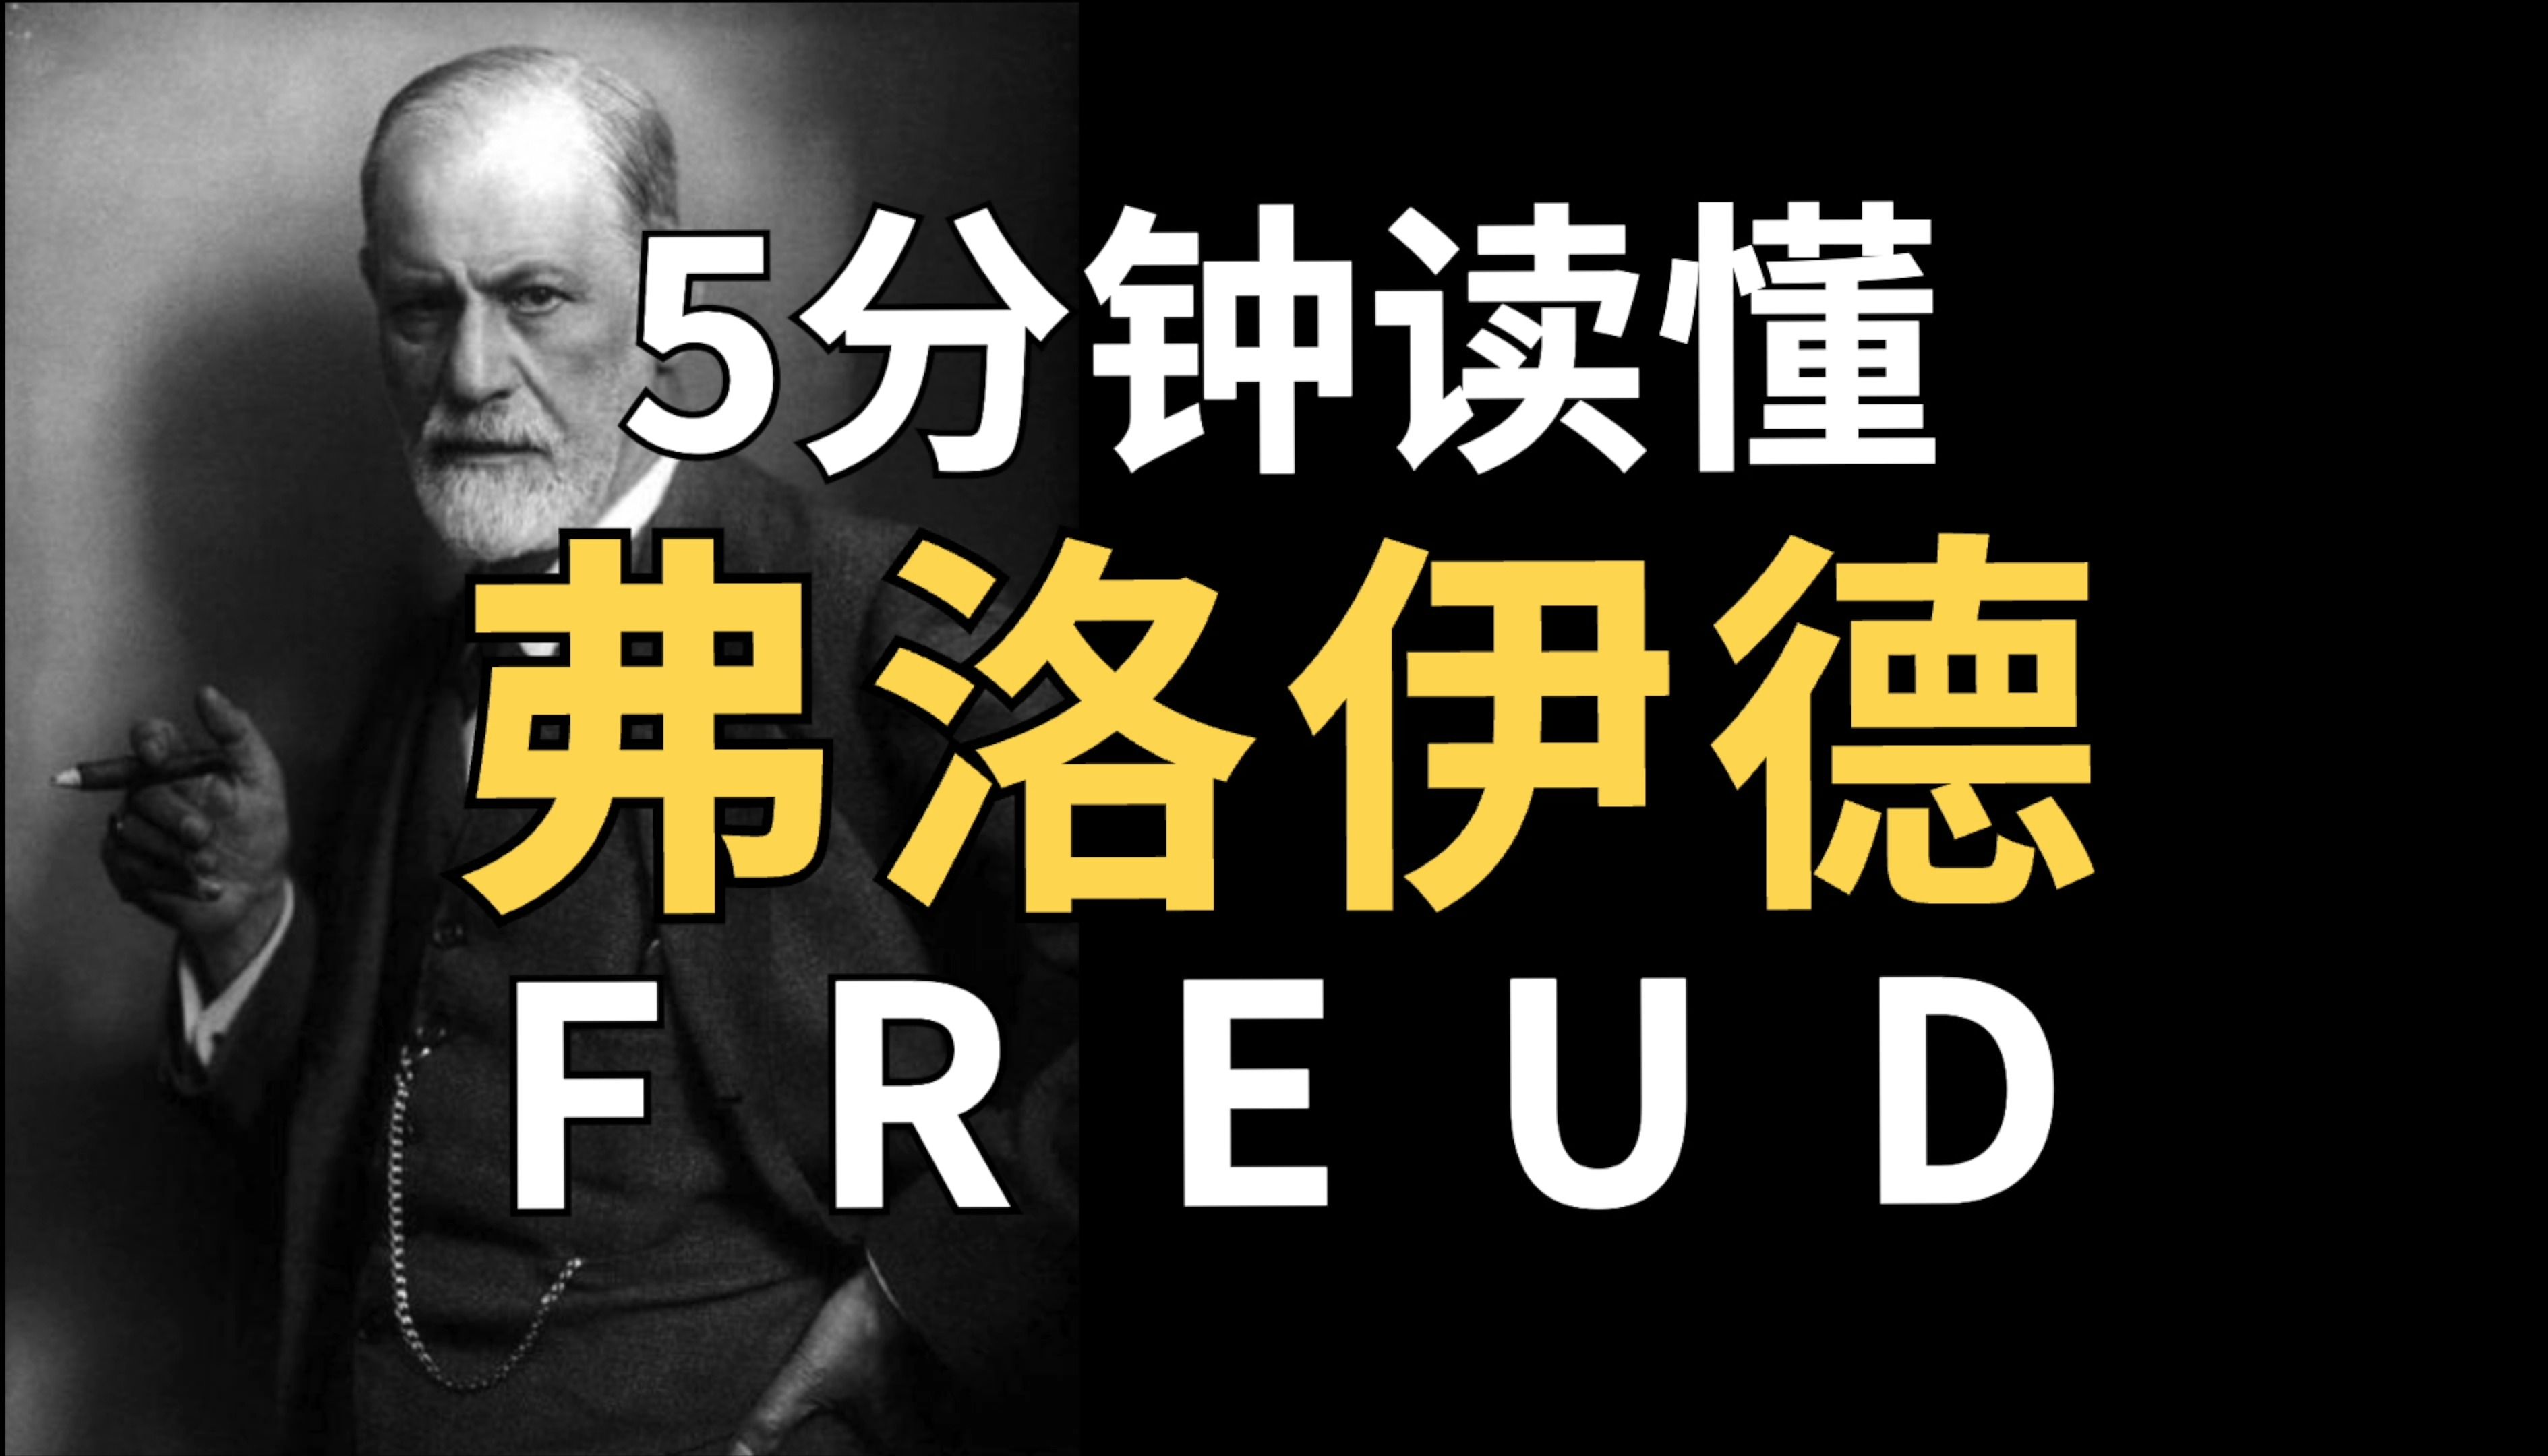 历史上的今天9月23日_1939年弗洛伊德逝世。弗洛伊德，奥地利精神病学家、心理学家、精神分析学派的创始人（生于1856年）